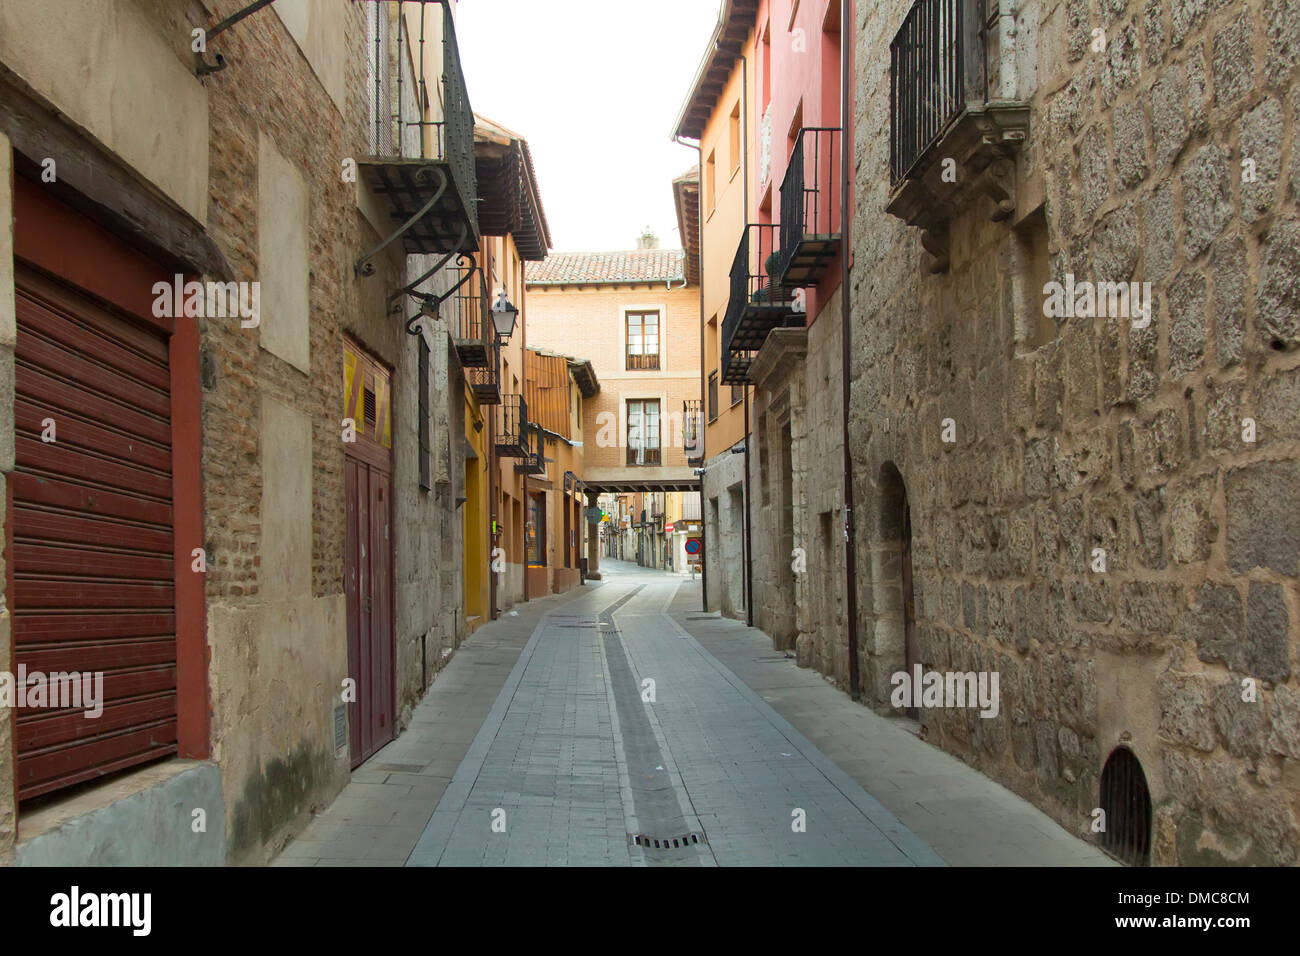 Et l'étroite rue typique de la ville de Tordesillas, Espagne Banque D'Images